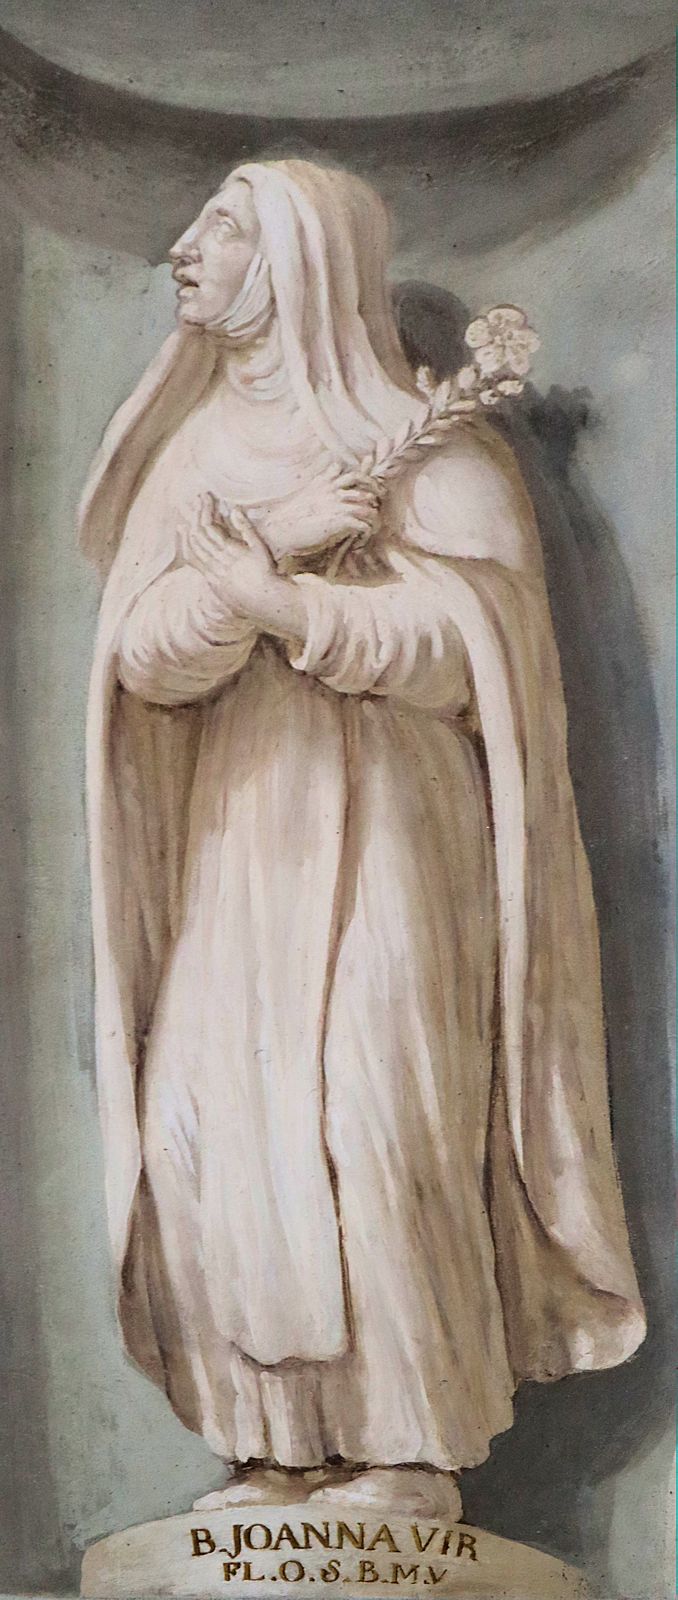 Luigi Ademollo: Fresko, um 1800, in der in der Basilika Santissima Annunziata in Florenz